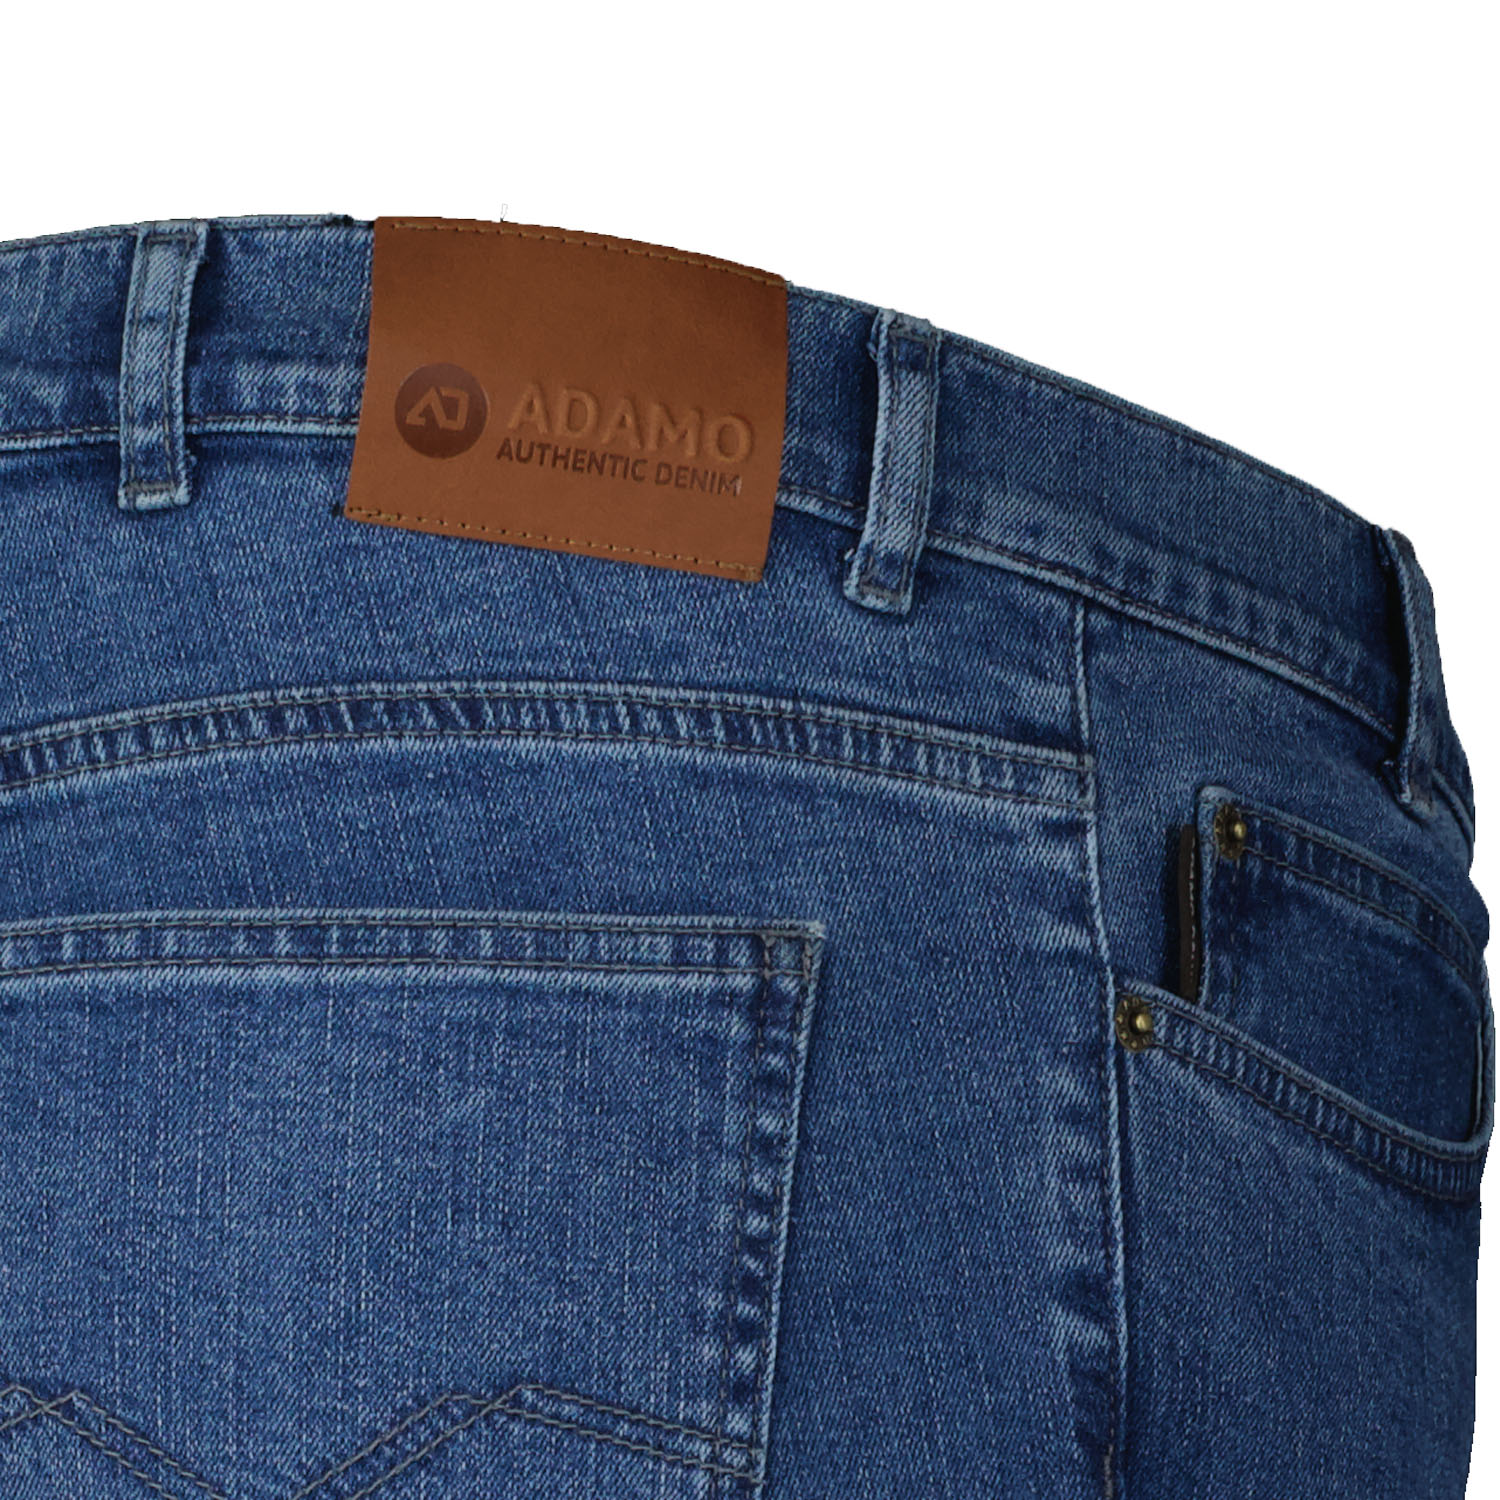 Herren 5-Pocket Jeans lang mit Stretch in mittelblau von Adamo Serie OHIO in Übergrößen 59 - 85